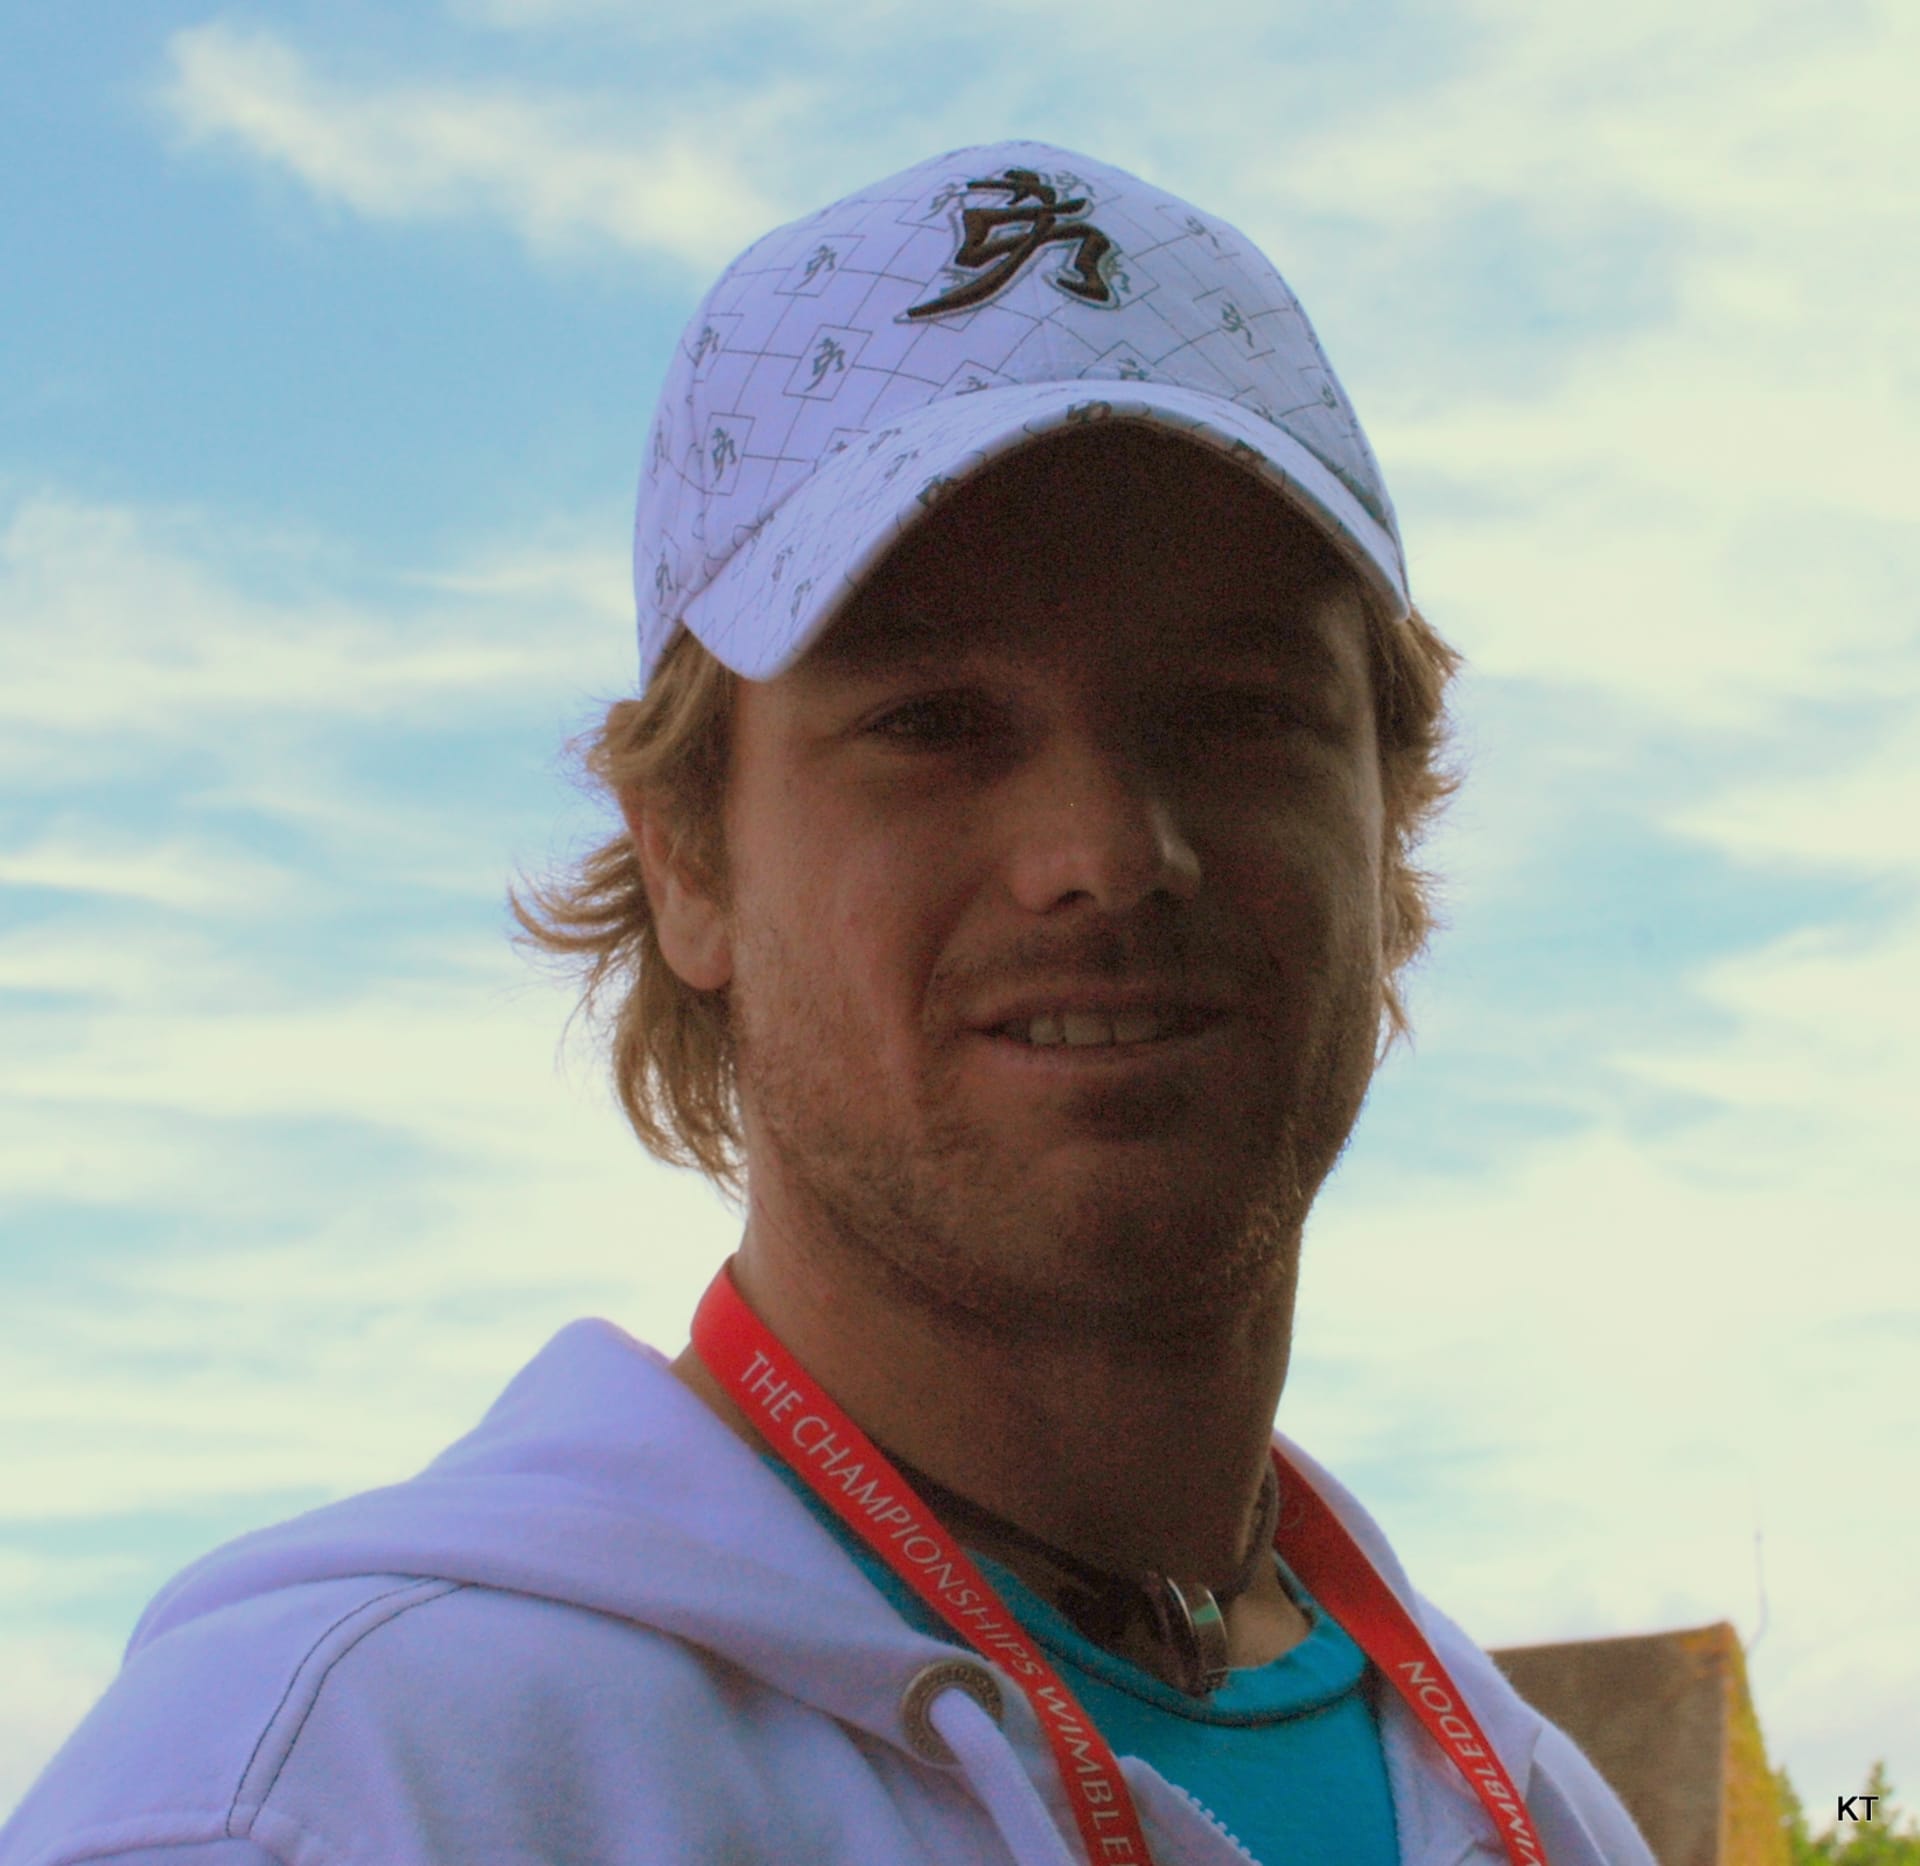 Blaž Kavčič (tenista) (Profilová fotografie)